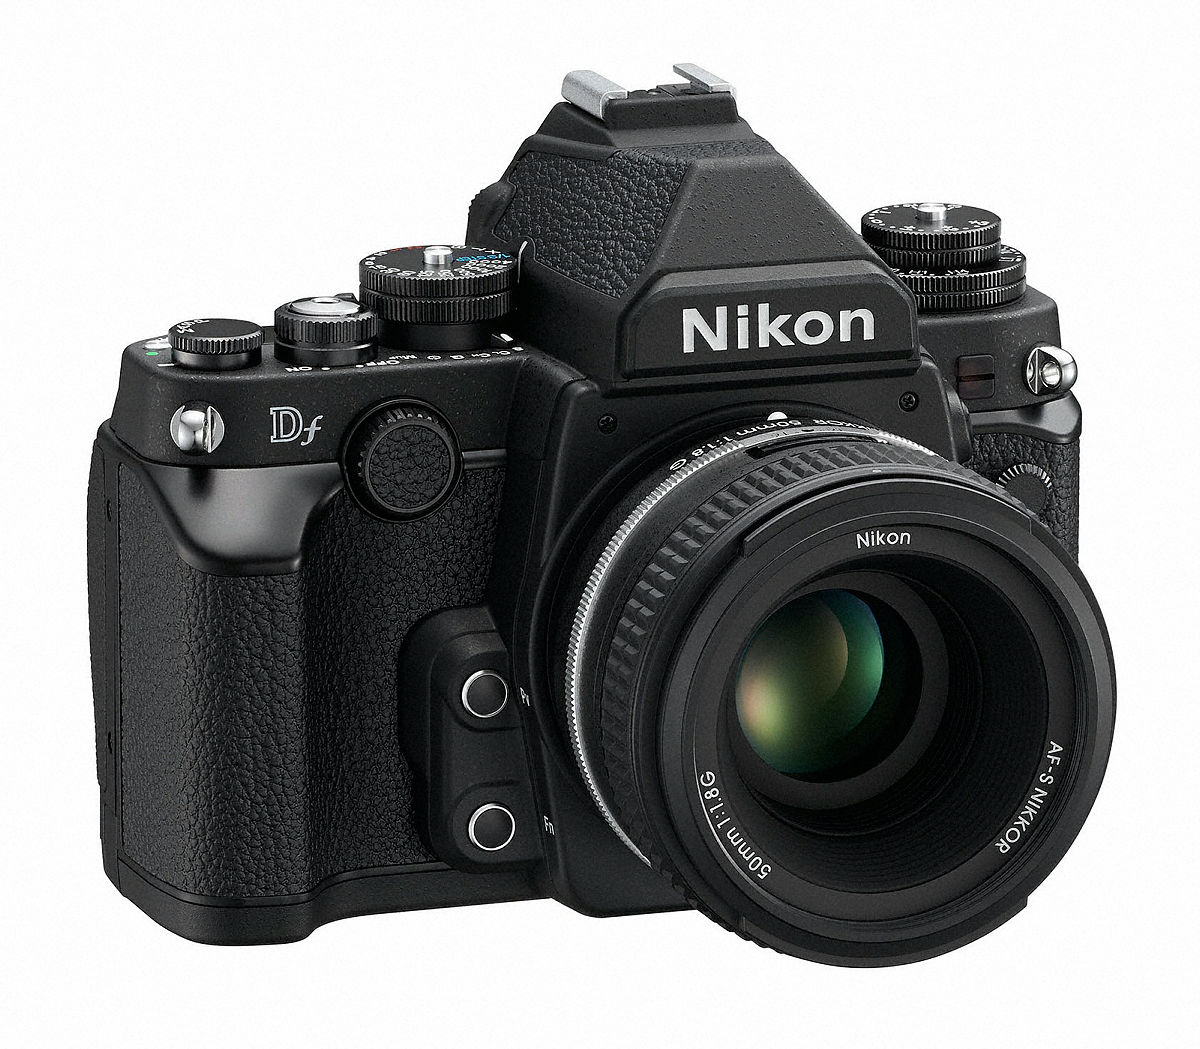 デジタル一眼レフカメラ「Nikon Df」はISO感度や絞り値を専用ダイヤルで設定 - GIGAZINE